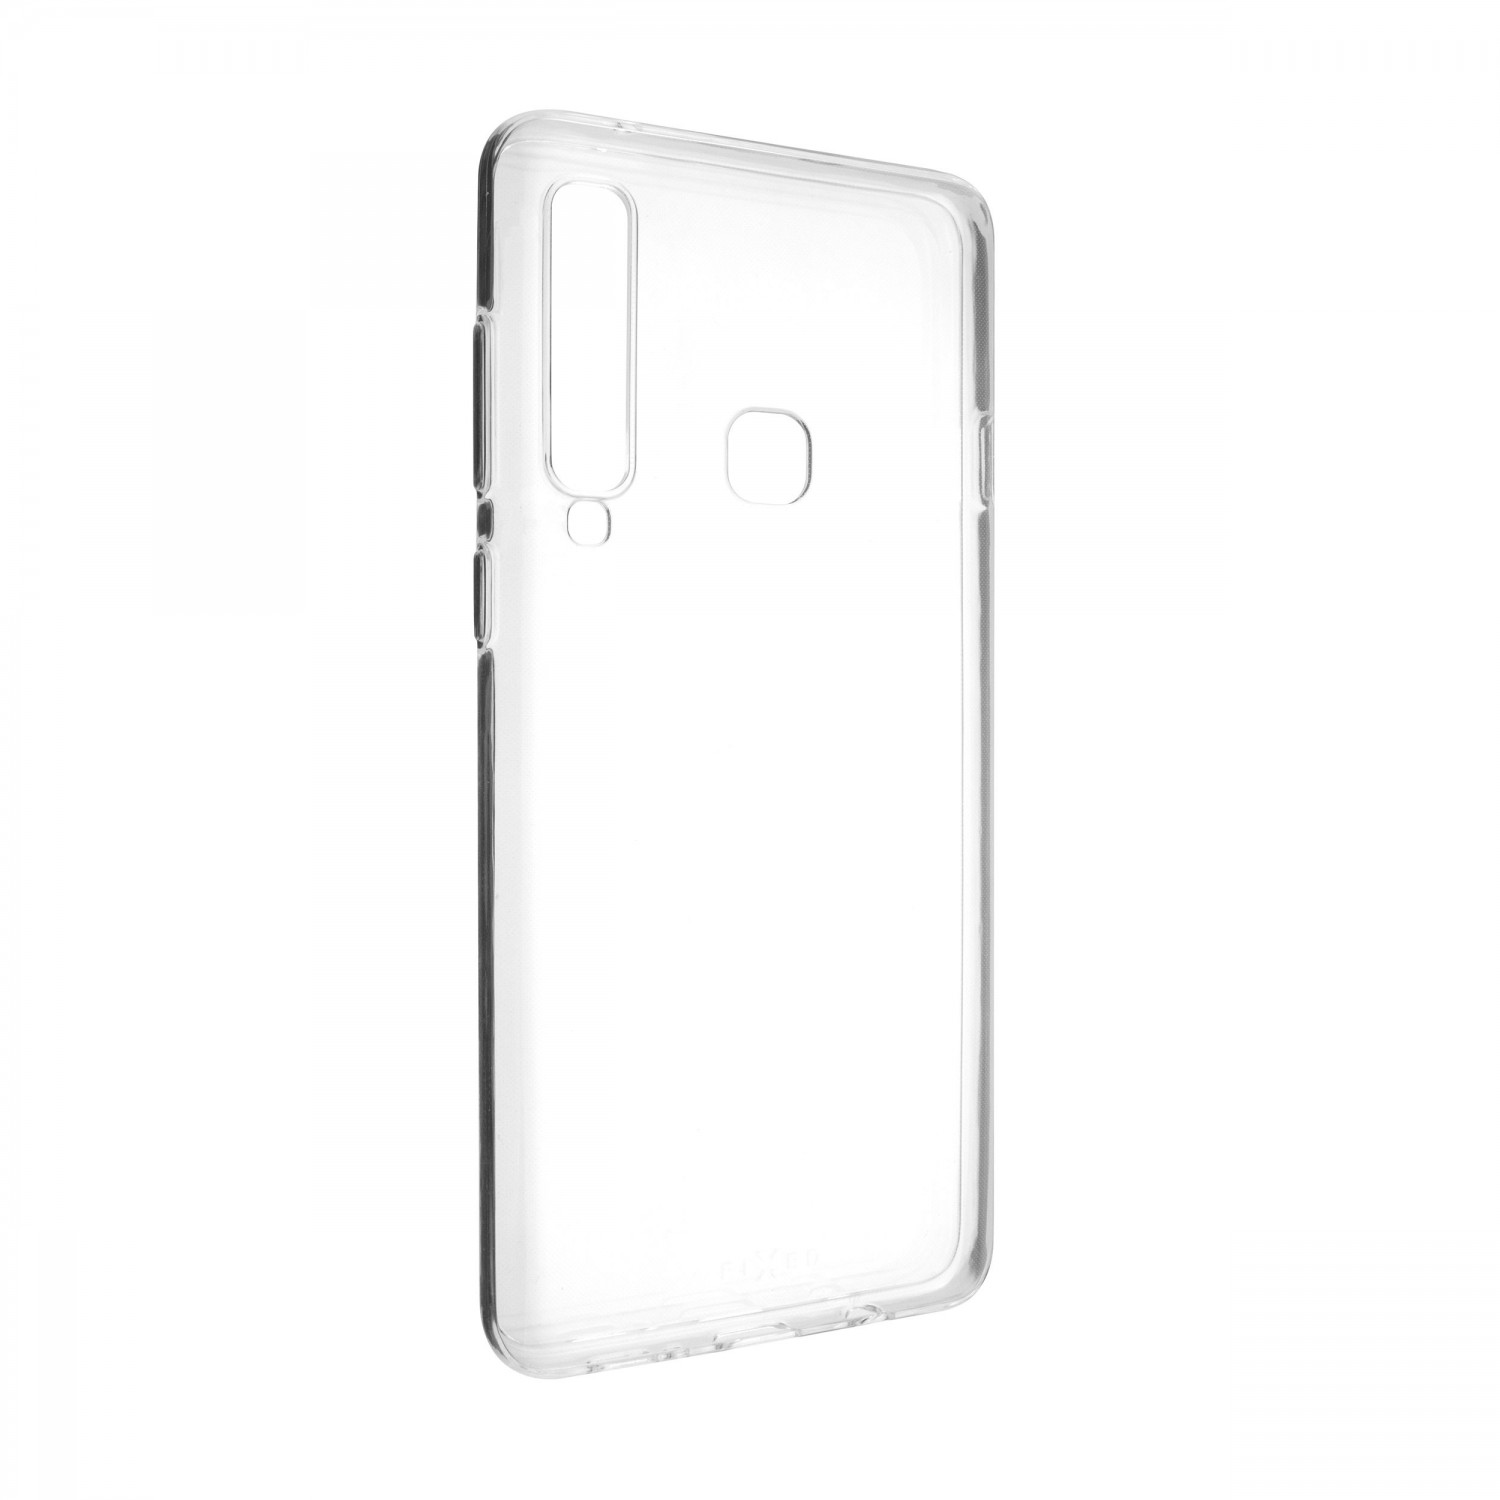 Ultratenké silikonové pouzdro FIXED Skin pro Samsung Galaxy A9, transparentní